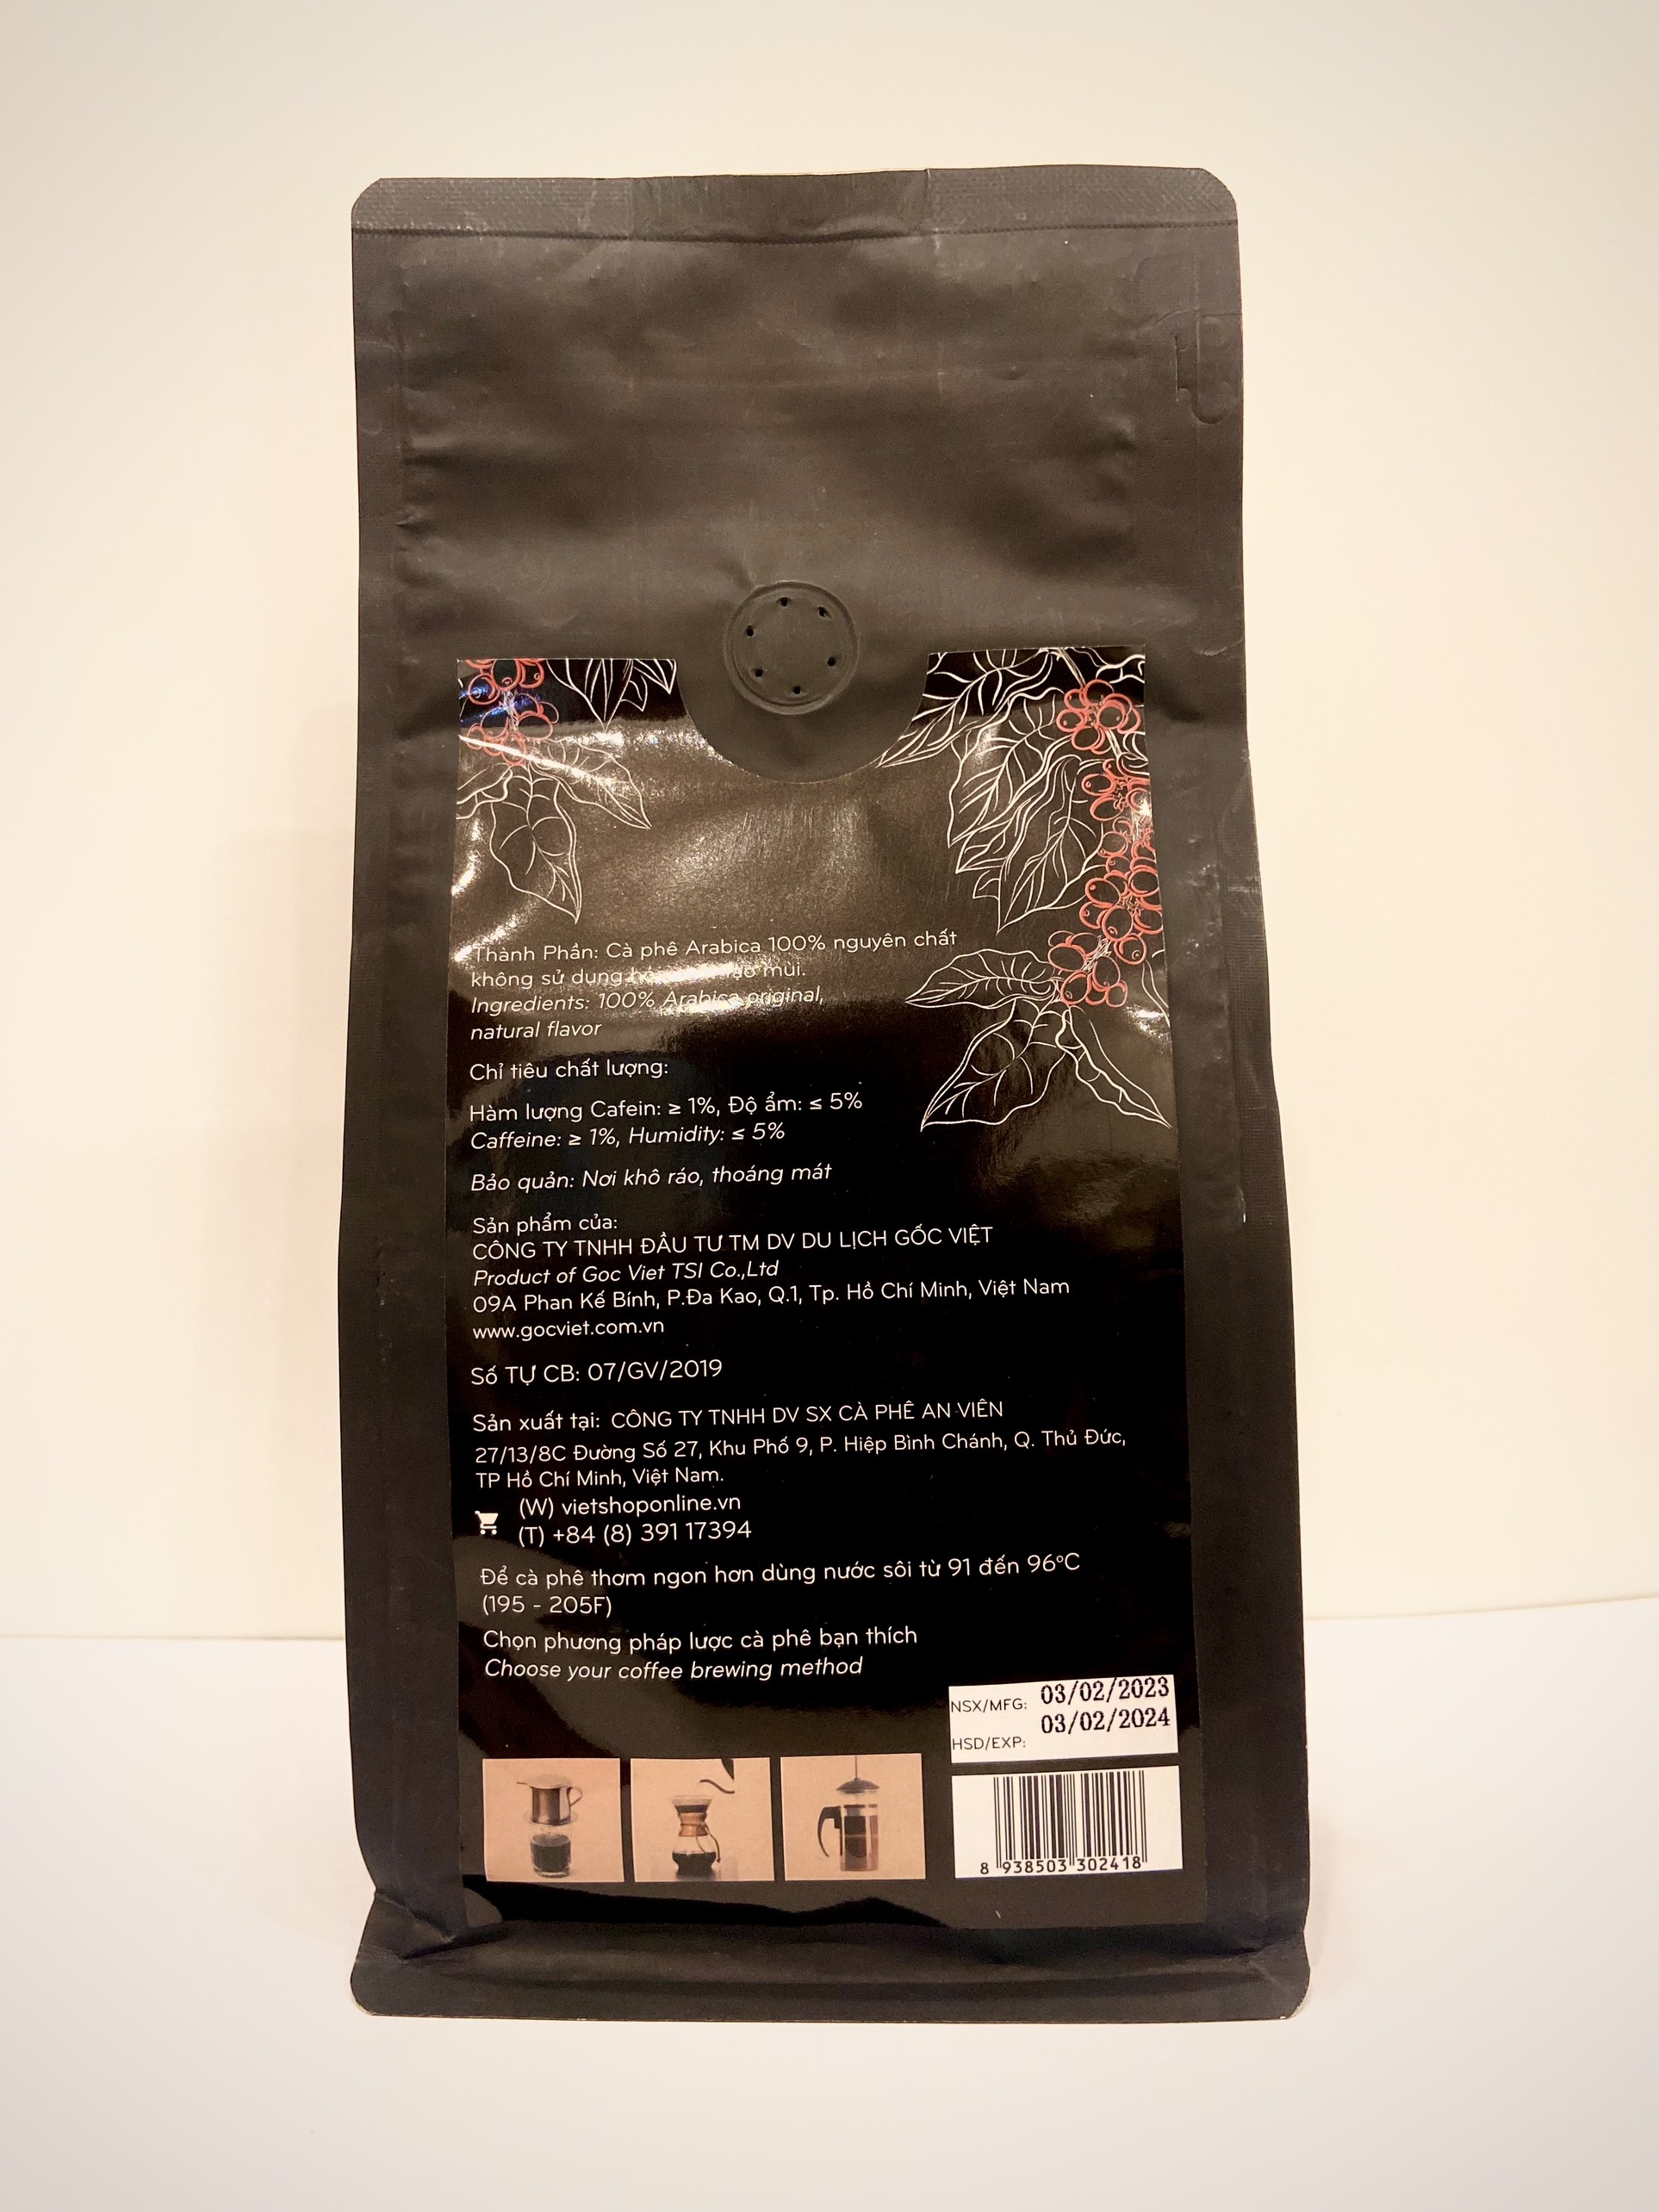 Hình ảnh Cà phê Arabica Cầu Đất, Đà lạt dạng rang xay 500g